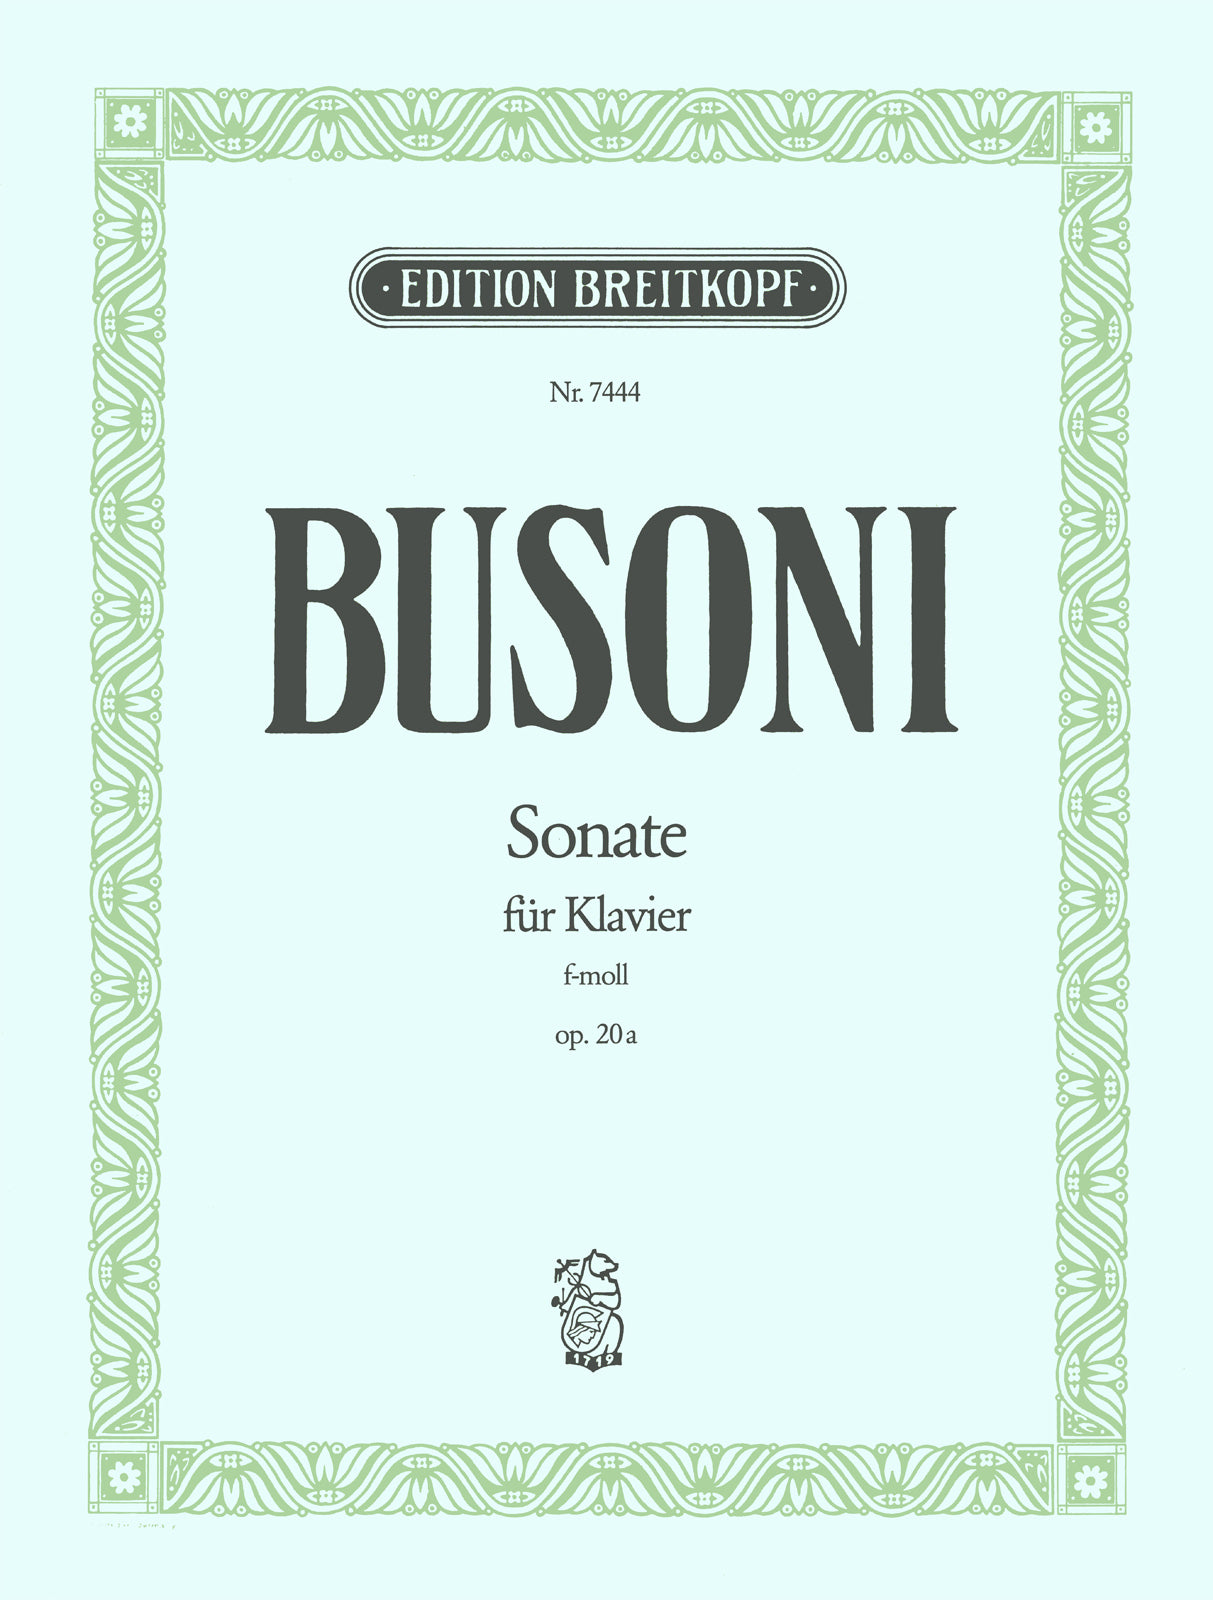 Busoni: Piano Sonata in F Minor, BV 204, Op. 20a